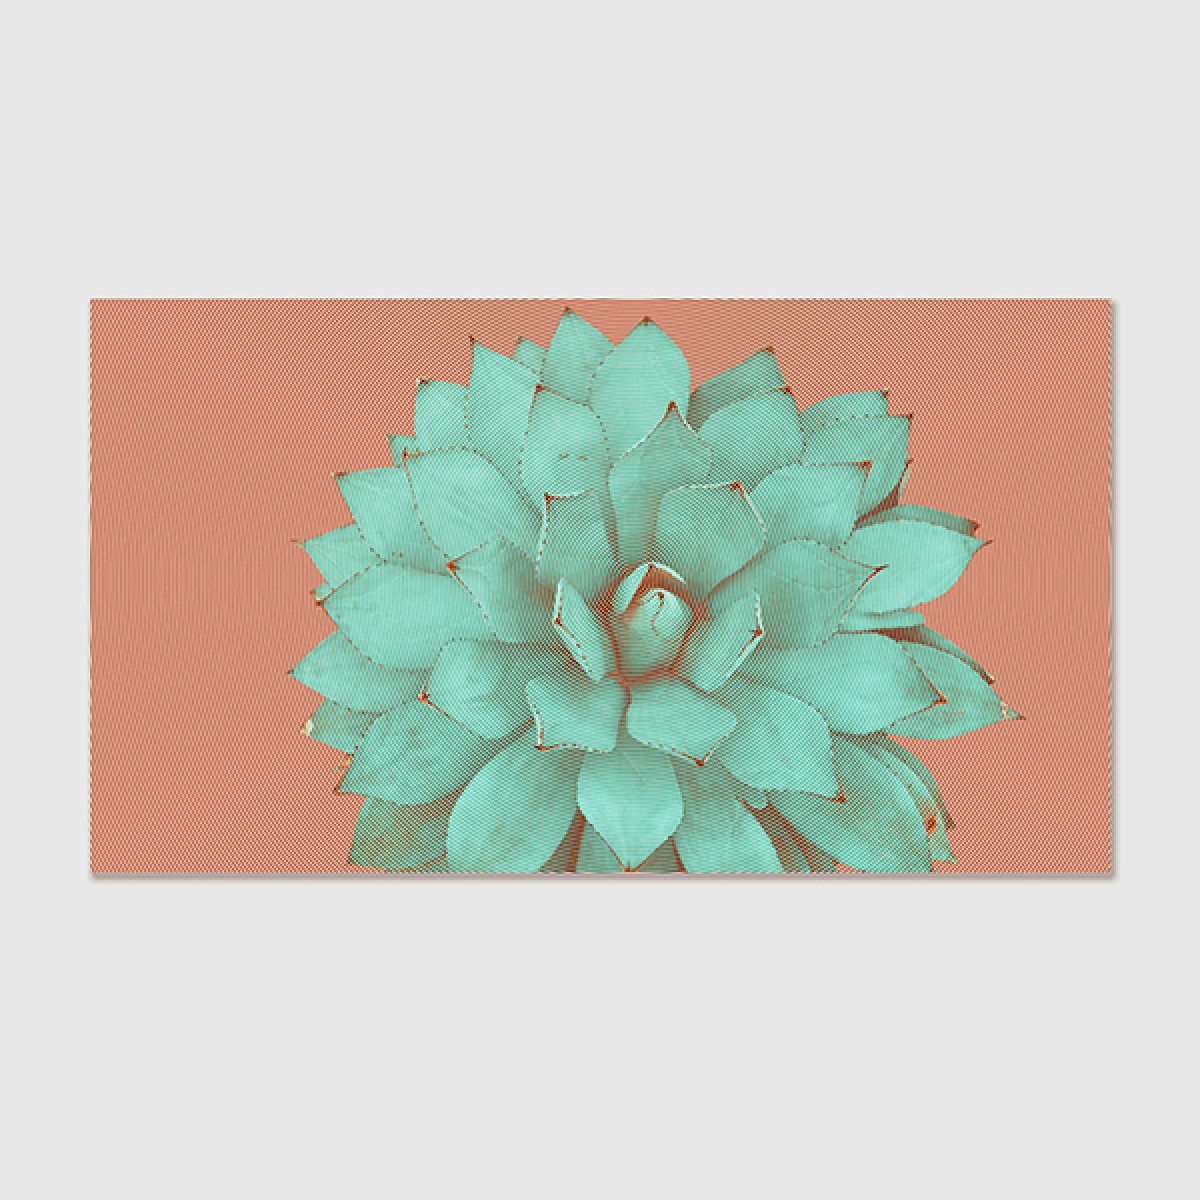 ZEITLOOPS "Kaktus", Poster, 16:9